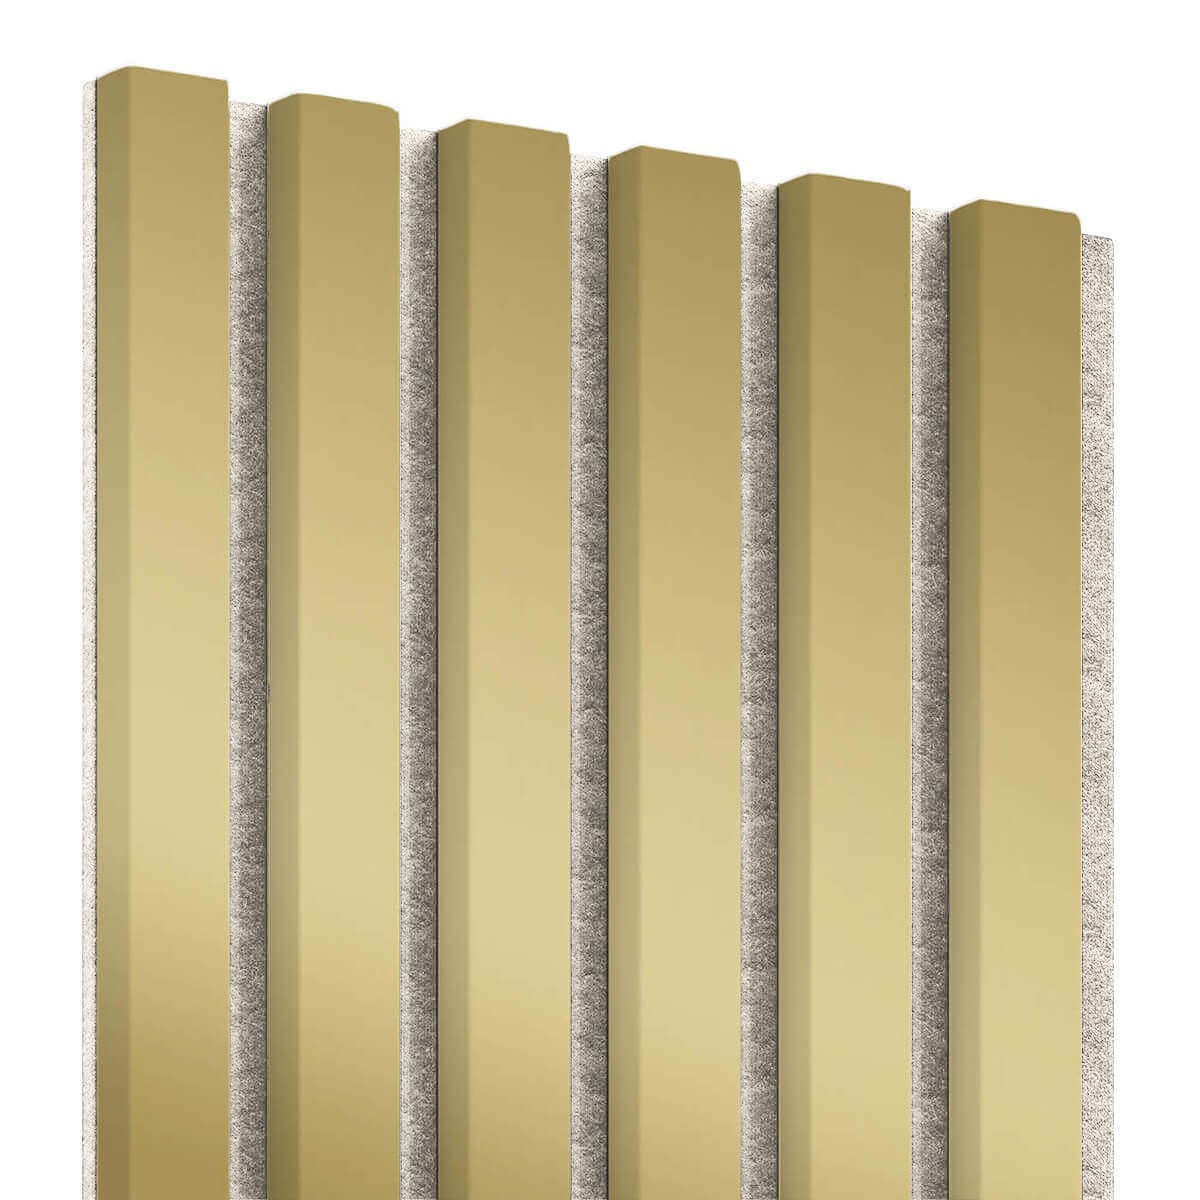 aus MDF günstig Kaufen-Lamellenleisten aus MDF auf Filz 275 x 30 cm - Gold. Lamellenleisten aus MDF auf Filz 275 x 30 cm - Gold . 